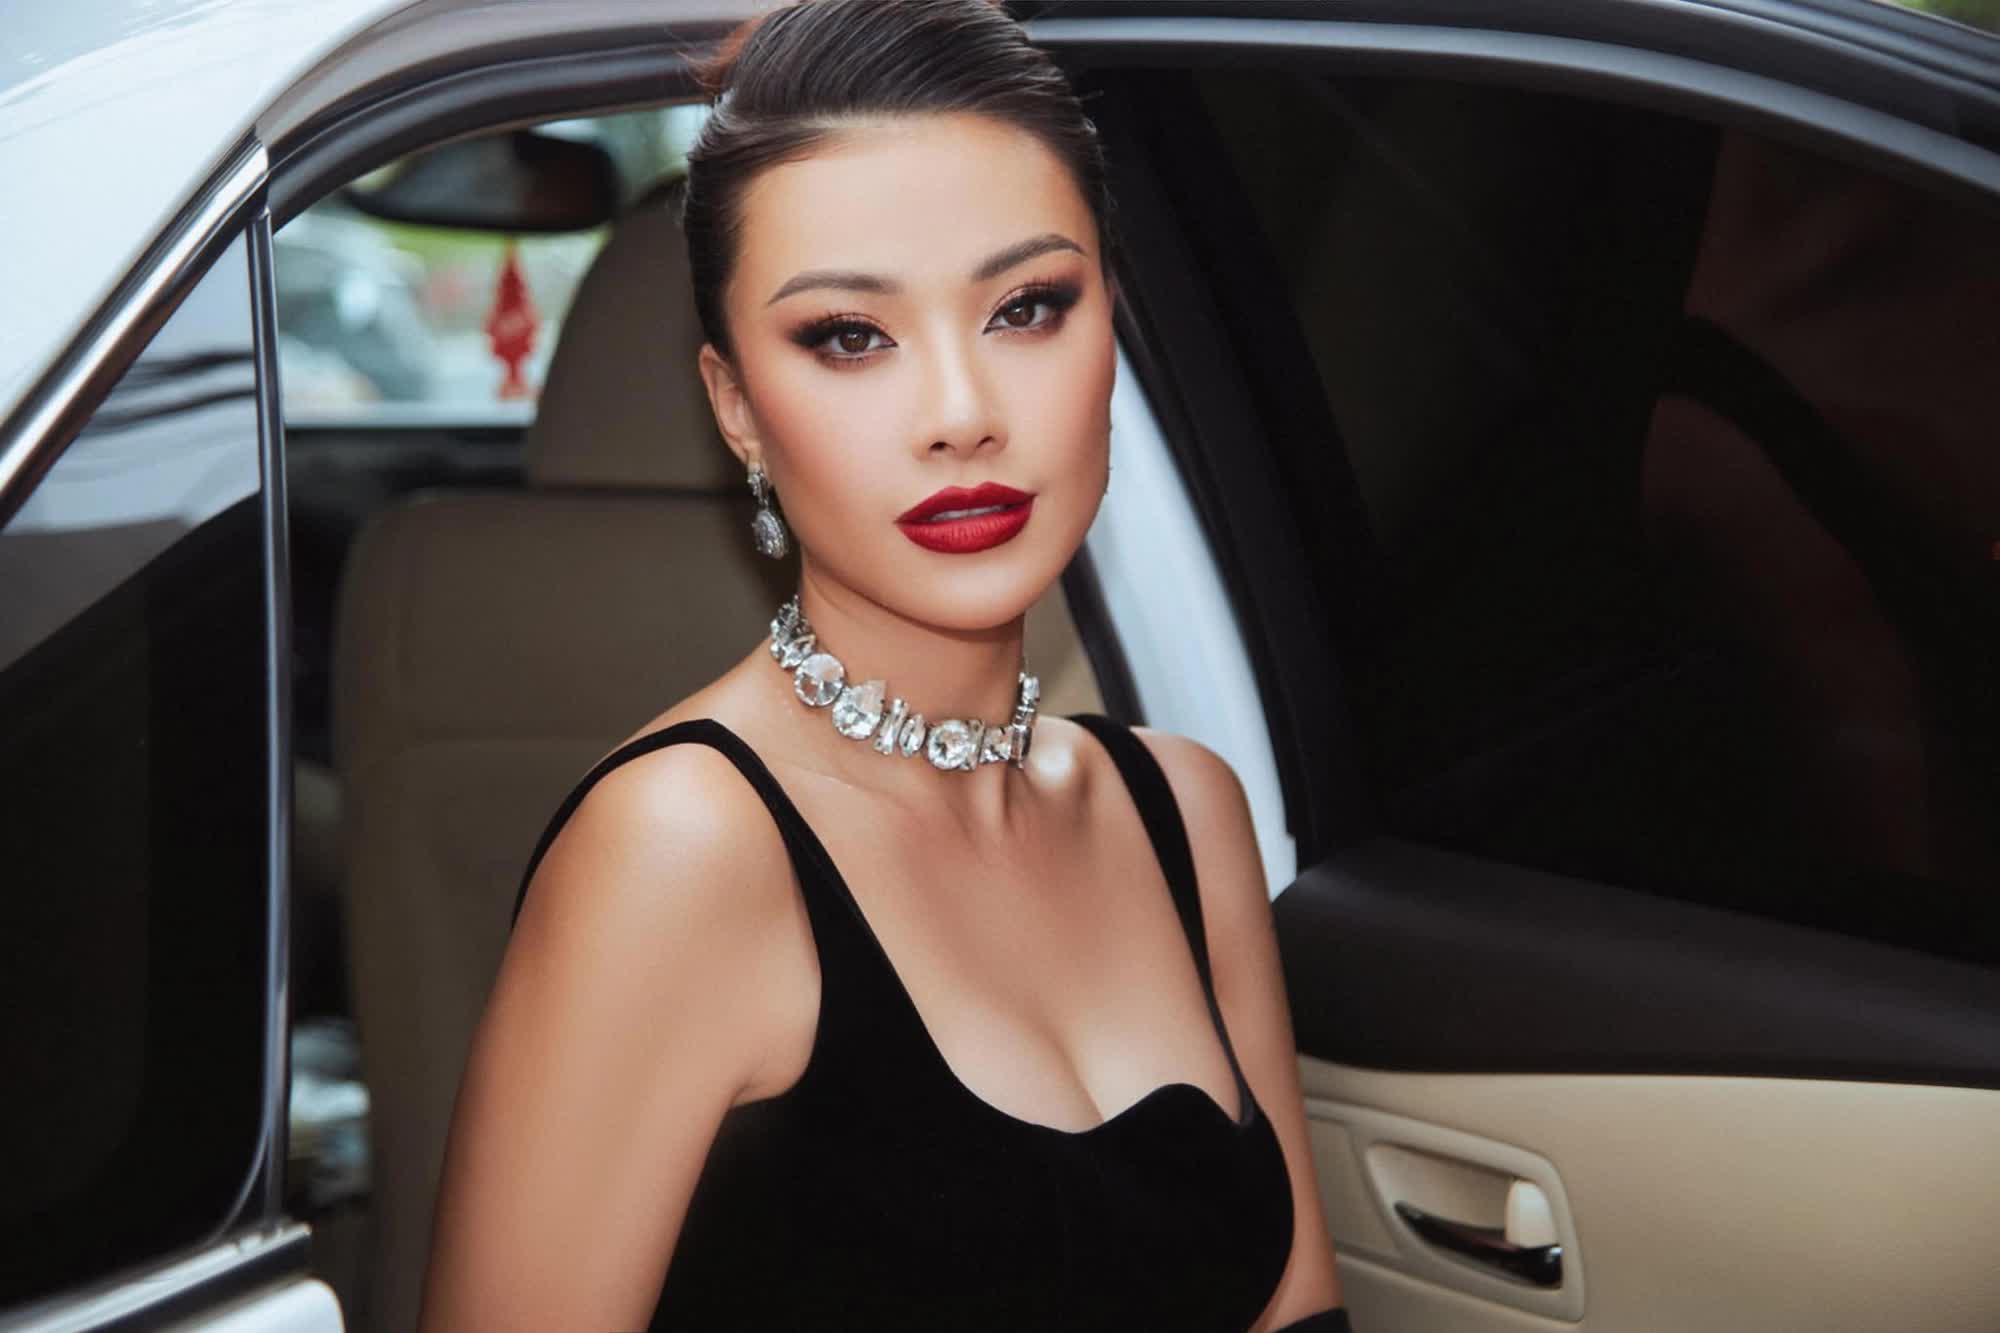 Á hậu Kim Duyên 3 năm sau Hoa hậu Hoàn vũ Việt Nam 2019: Đoạt danh hiệu lớn ở quốc tế nhưng vẫn bị nhắc lùm xùm học vấn - ảnh 1